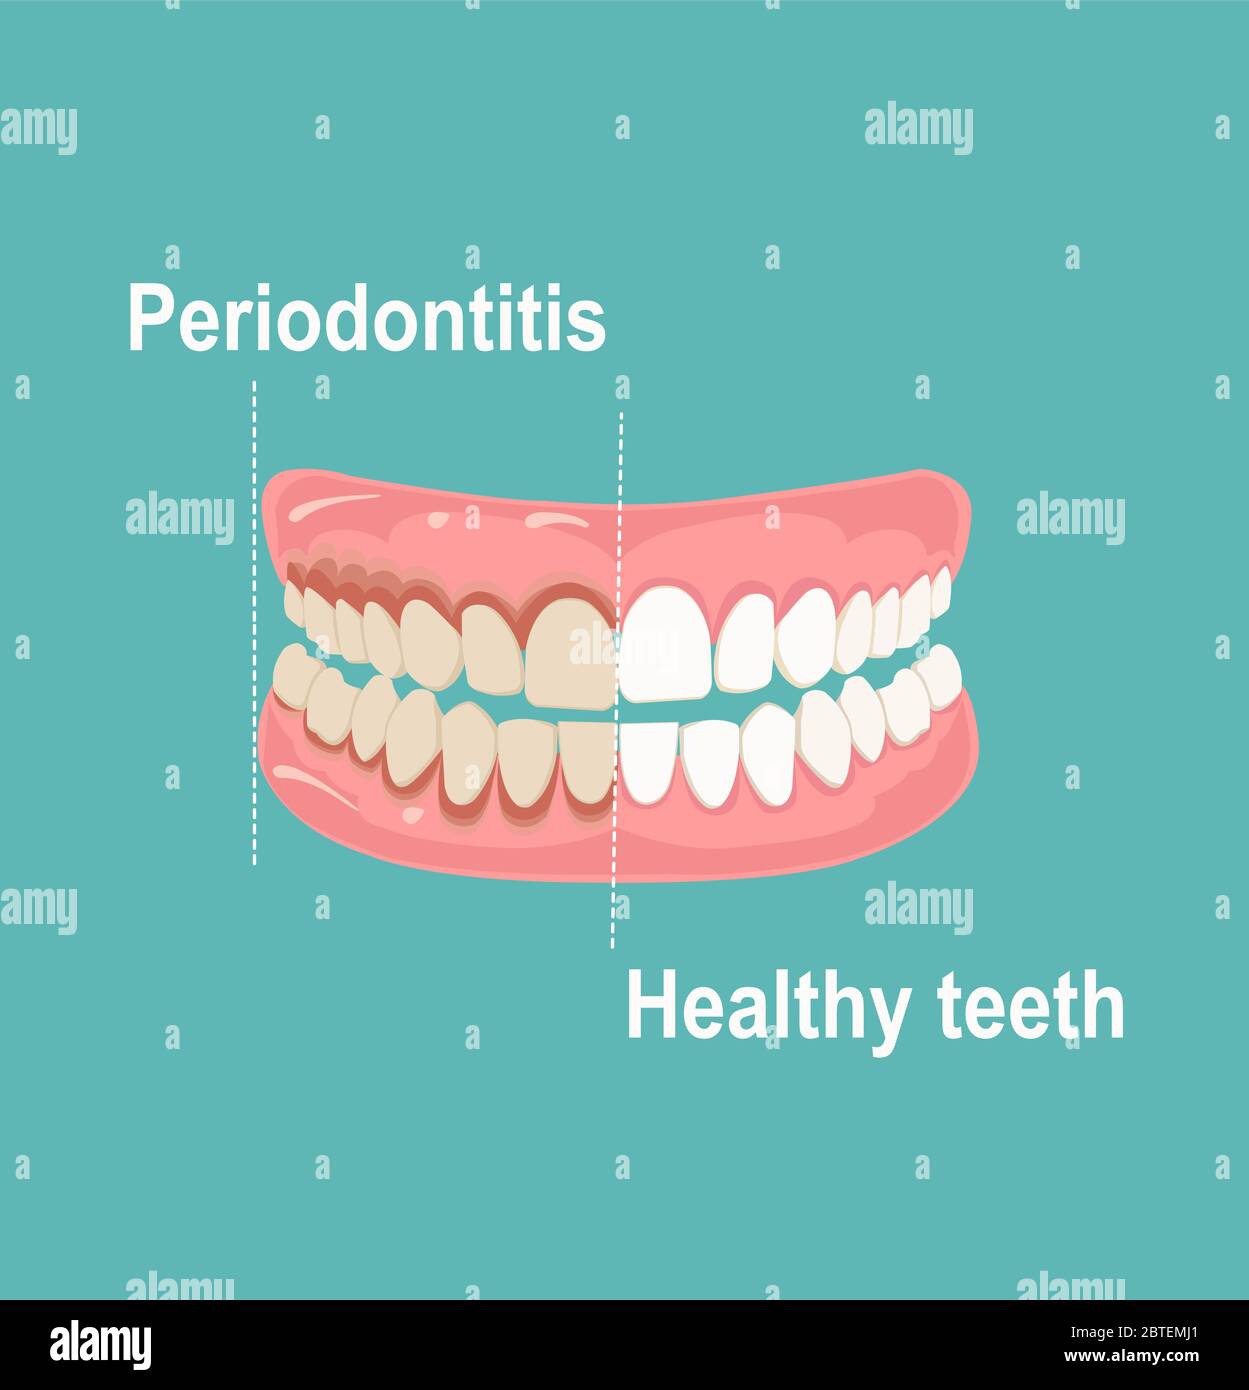 Vecteur des dents et des gencives humaines, en bonne santé et affectées par la parodontite Illustration de Vecteur